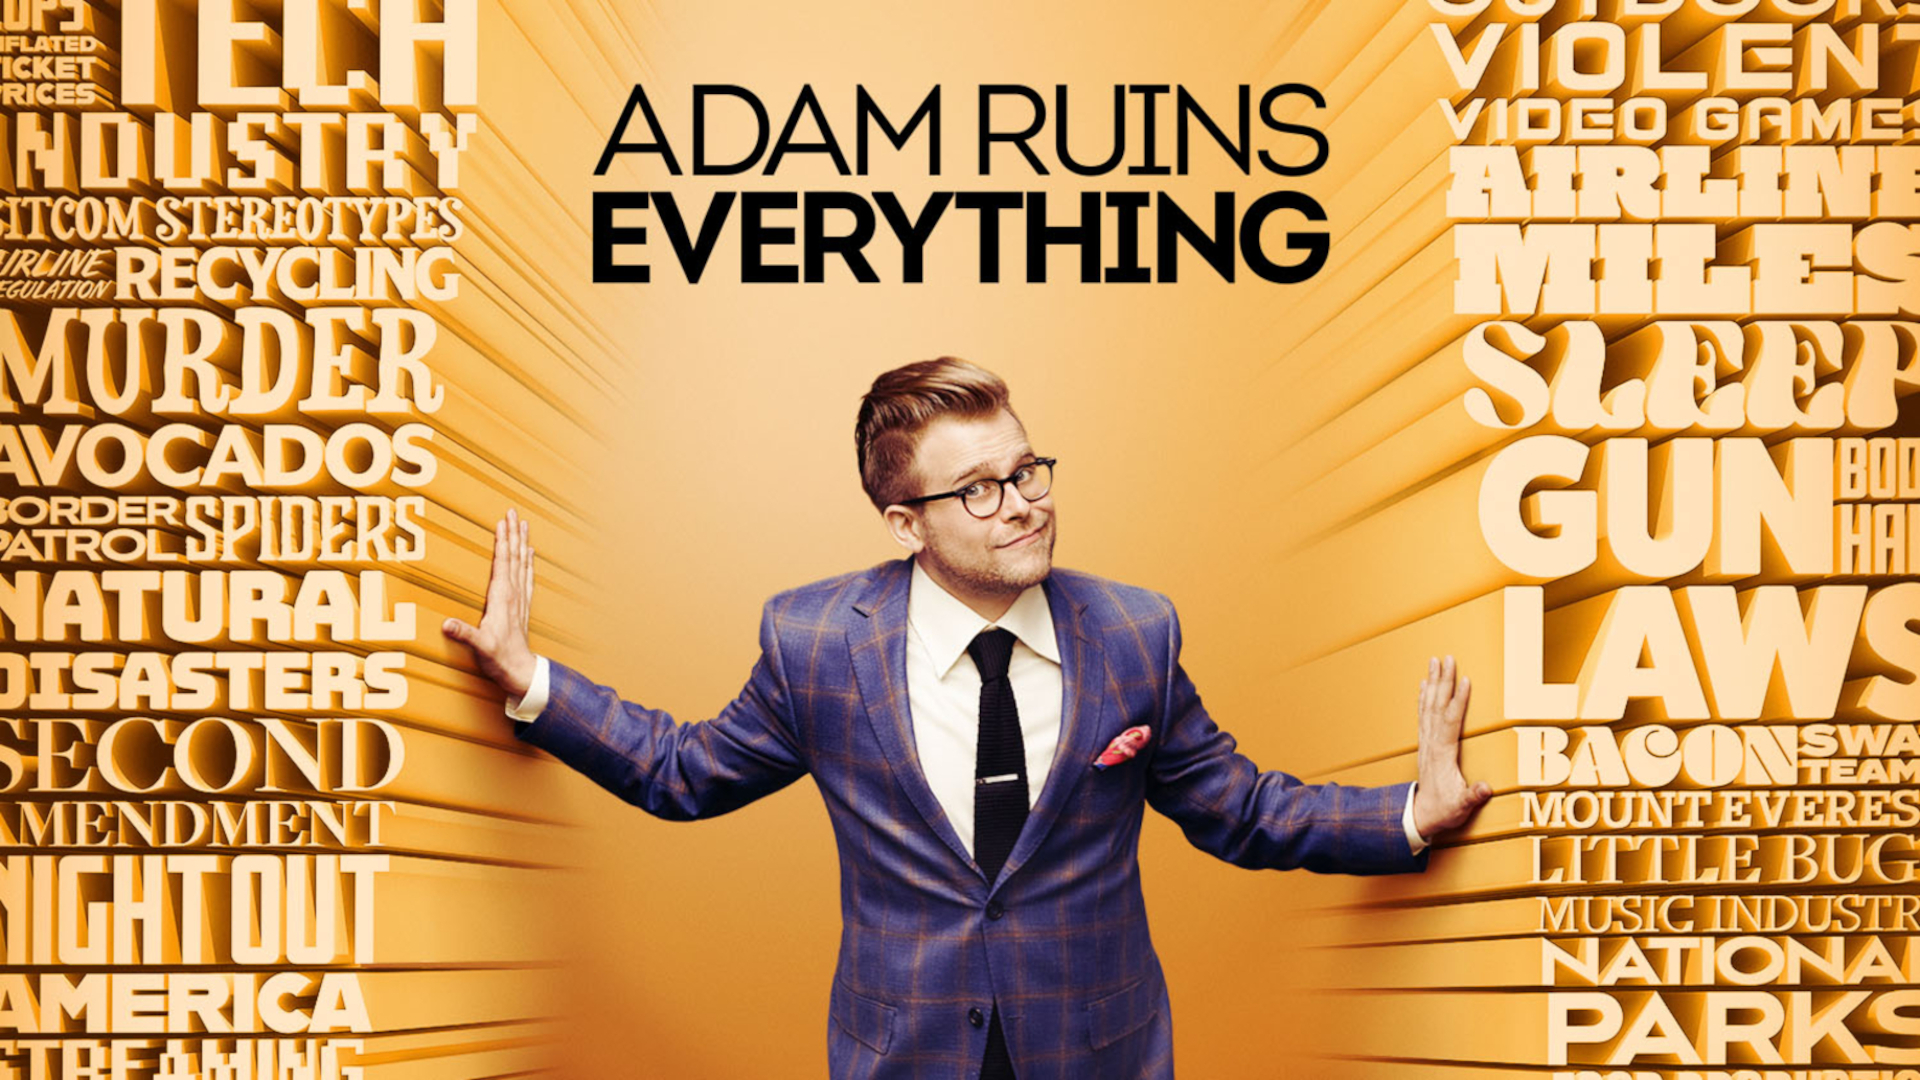 Ruined everything. Adam Ruins everything. Adam Ruins everything демократические выборы.